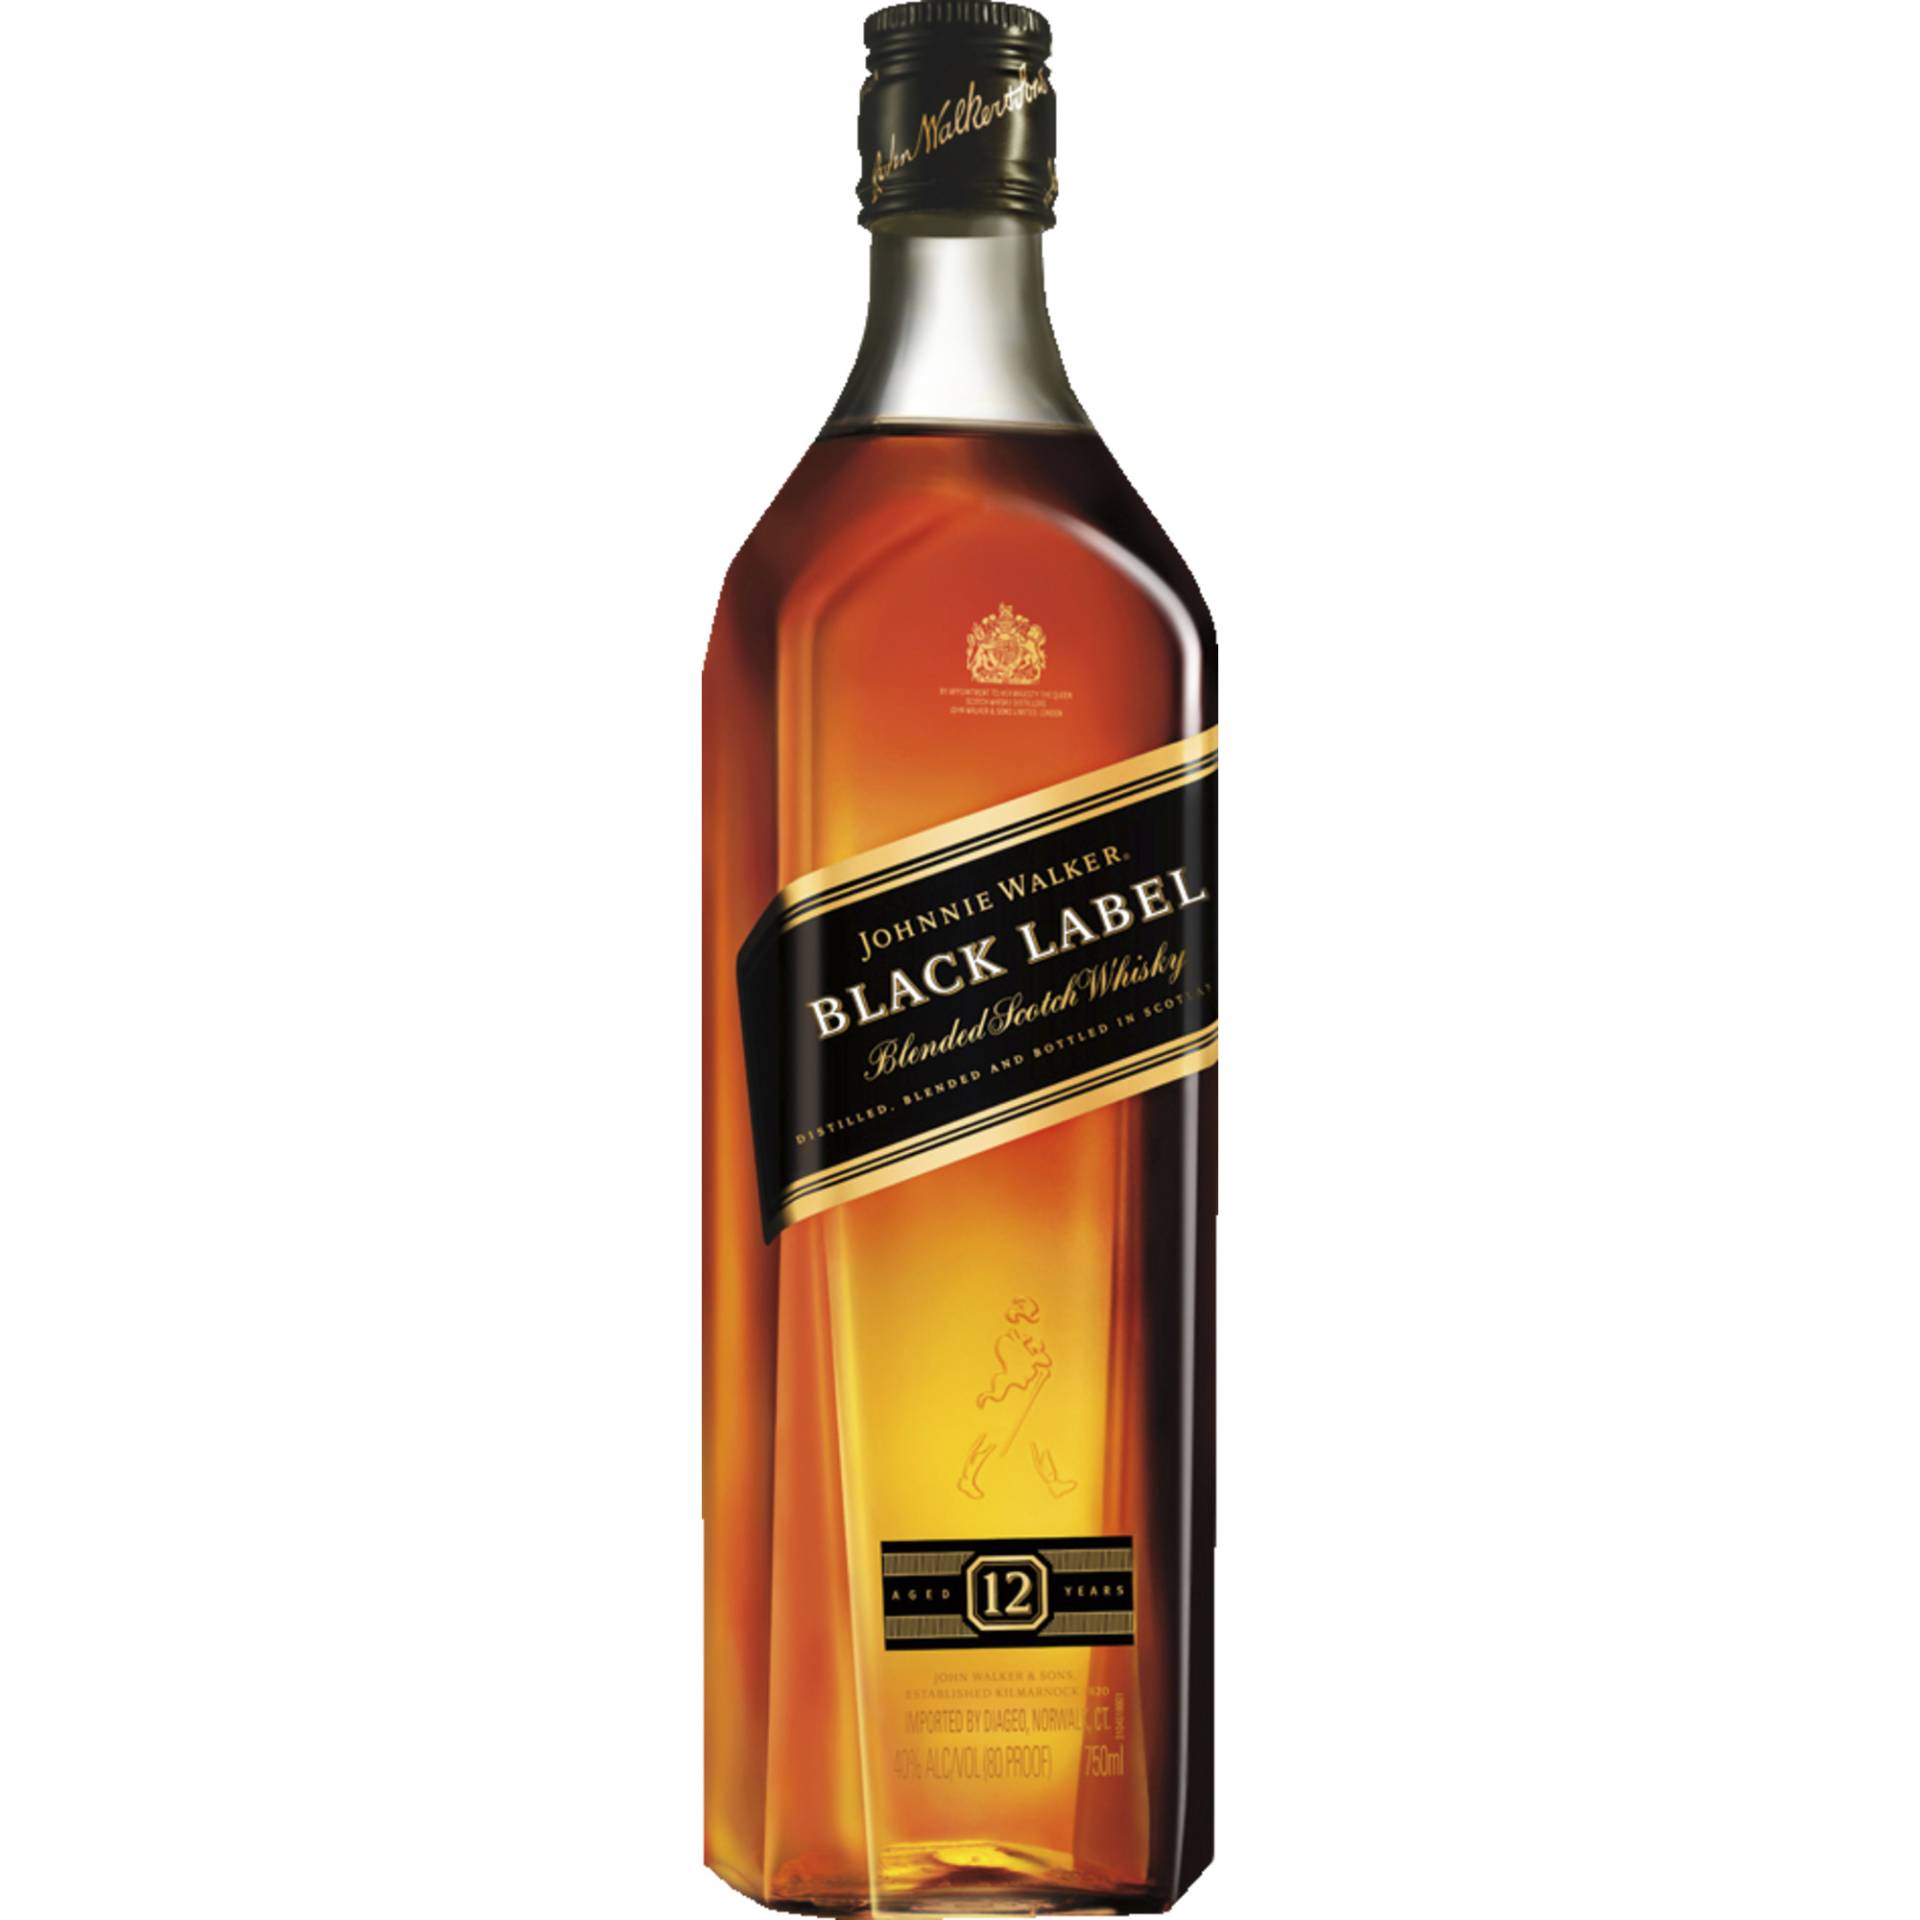 Johnnie Walker Black Label 12 Years Blended Scotch, Whisky, 0,7 L, 40% Vol., Schottland, Spirituosen von Johnnie Walker & Sons, 5 Lochside Way,Edinburgh, EH12 9DT,Scotland